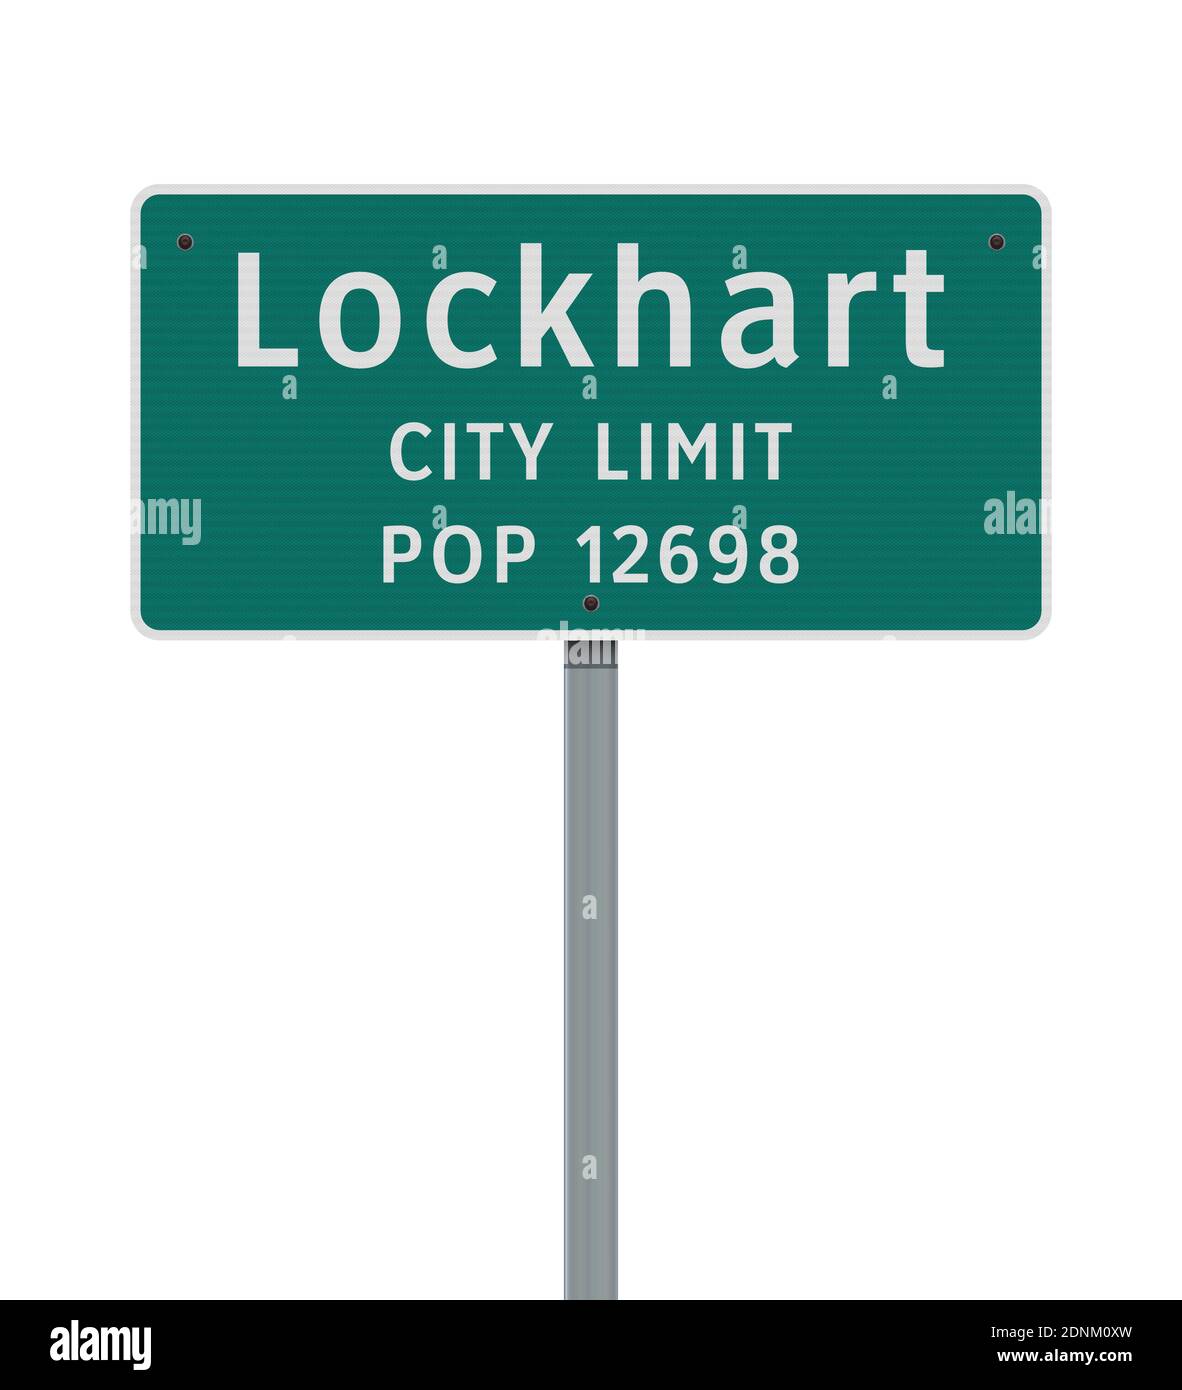 Illustration vectorielle du panneau vert de la limite de la ville de Lockhart Illustration de Vecteur